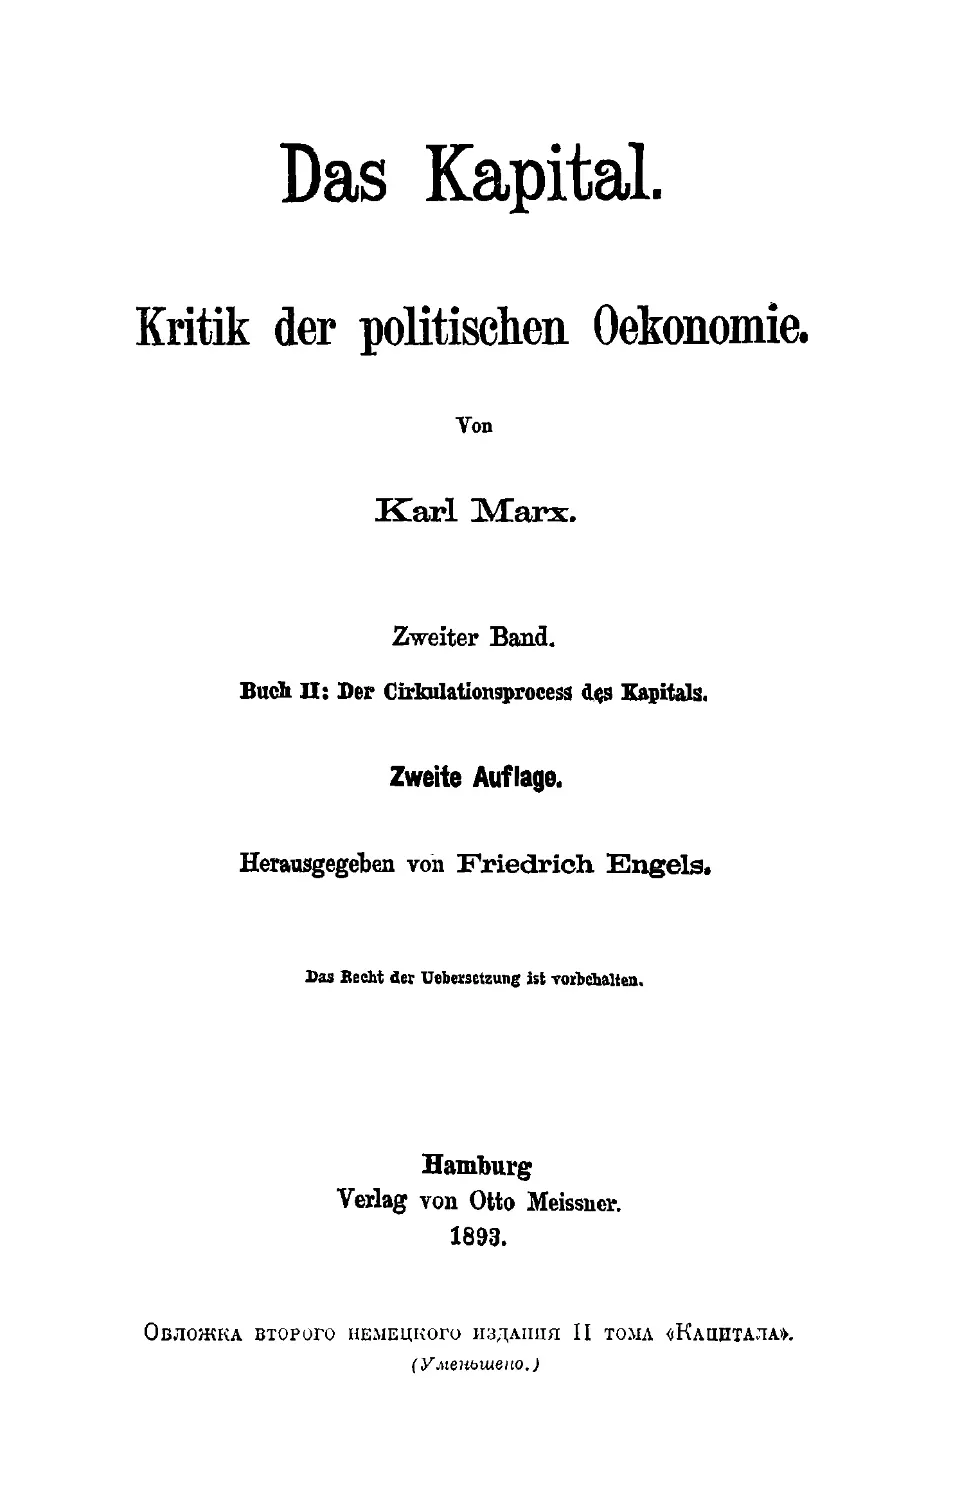 Обложка второго немецкого издания II тома «Капитала»